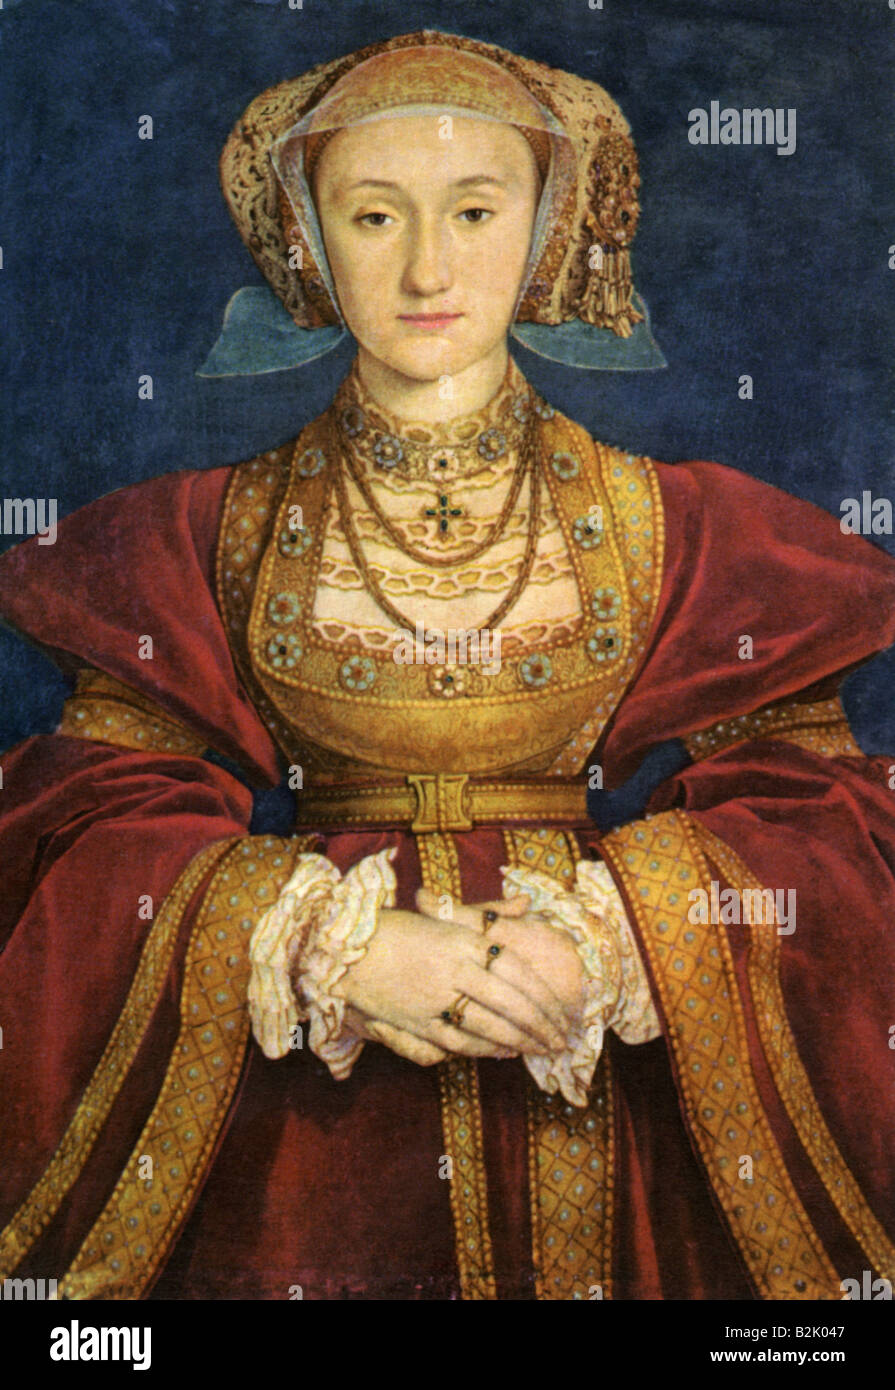 Anna von Kleve, 22.9.1515 - 16.7.1557, Königin von England 6.1.1540 - 9.7.1540, halbe Länge, Gemälde von Hans Holbein dem Jüngeren, 1539, Louvre, Paris,, Artist's Urheberrecht nicht geklärt zu werden. Stockfoto